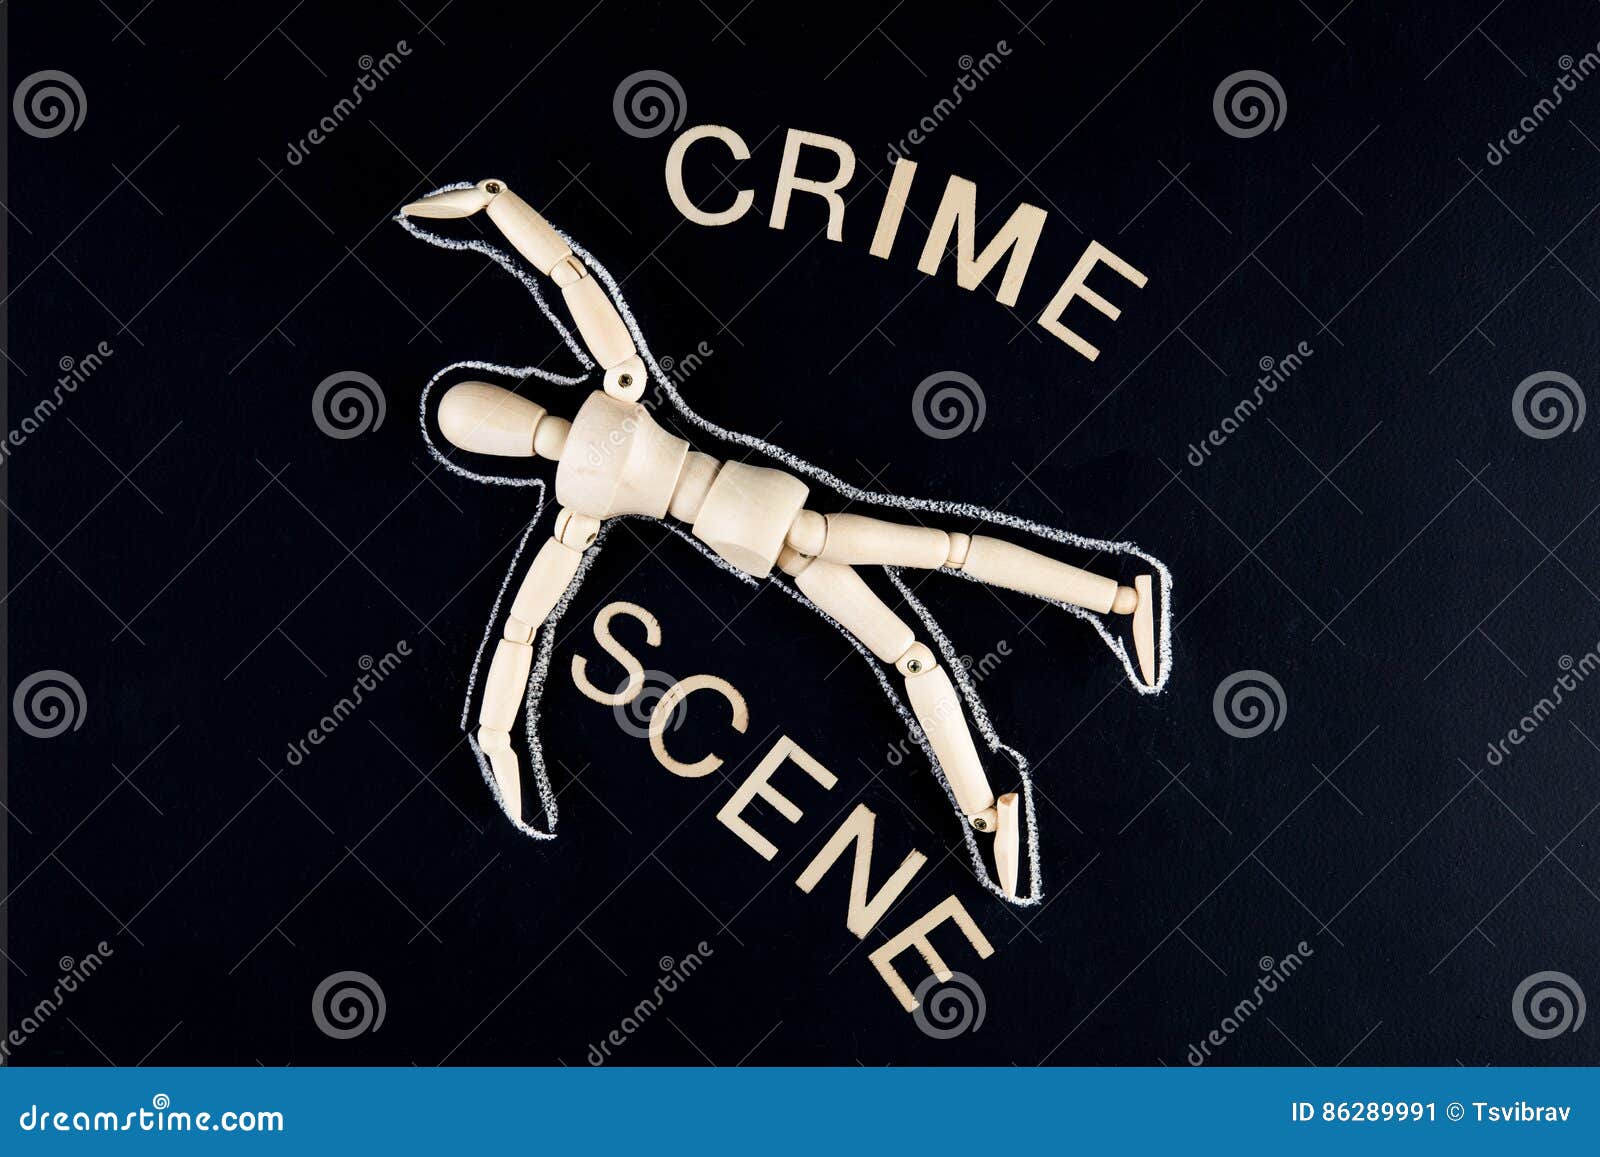 crime scene tape outline